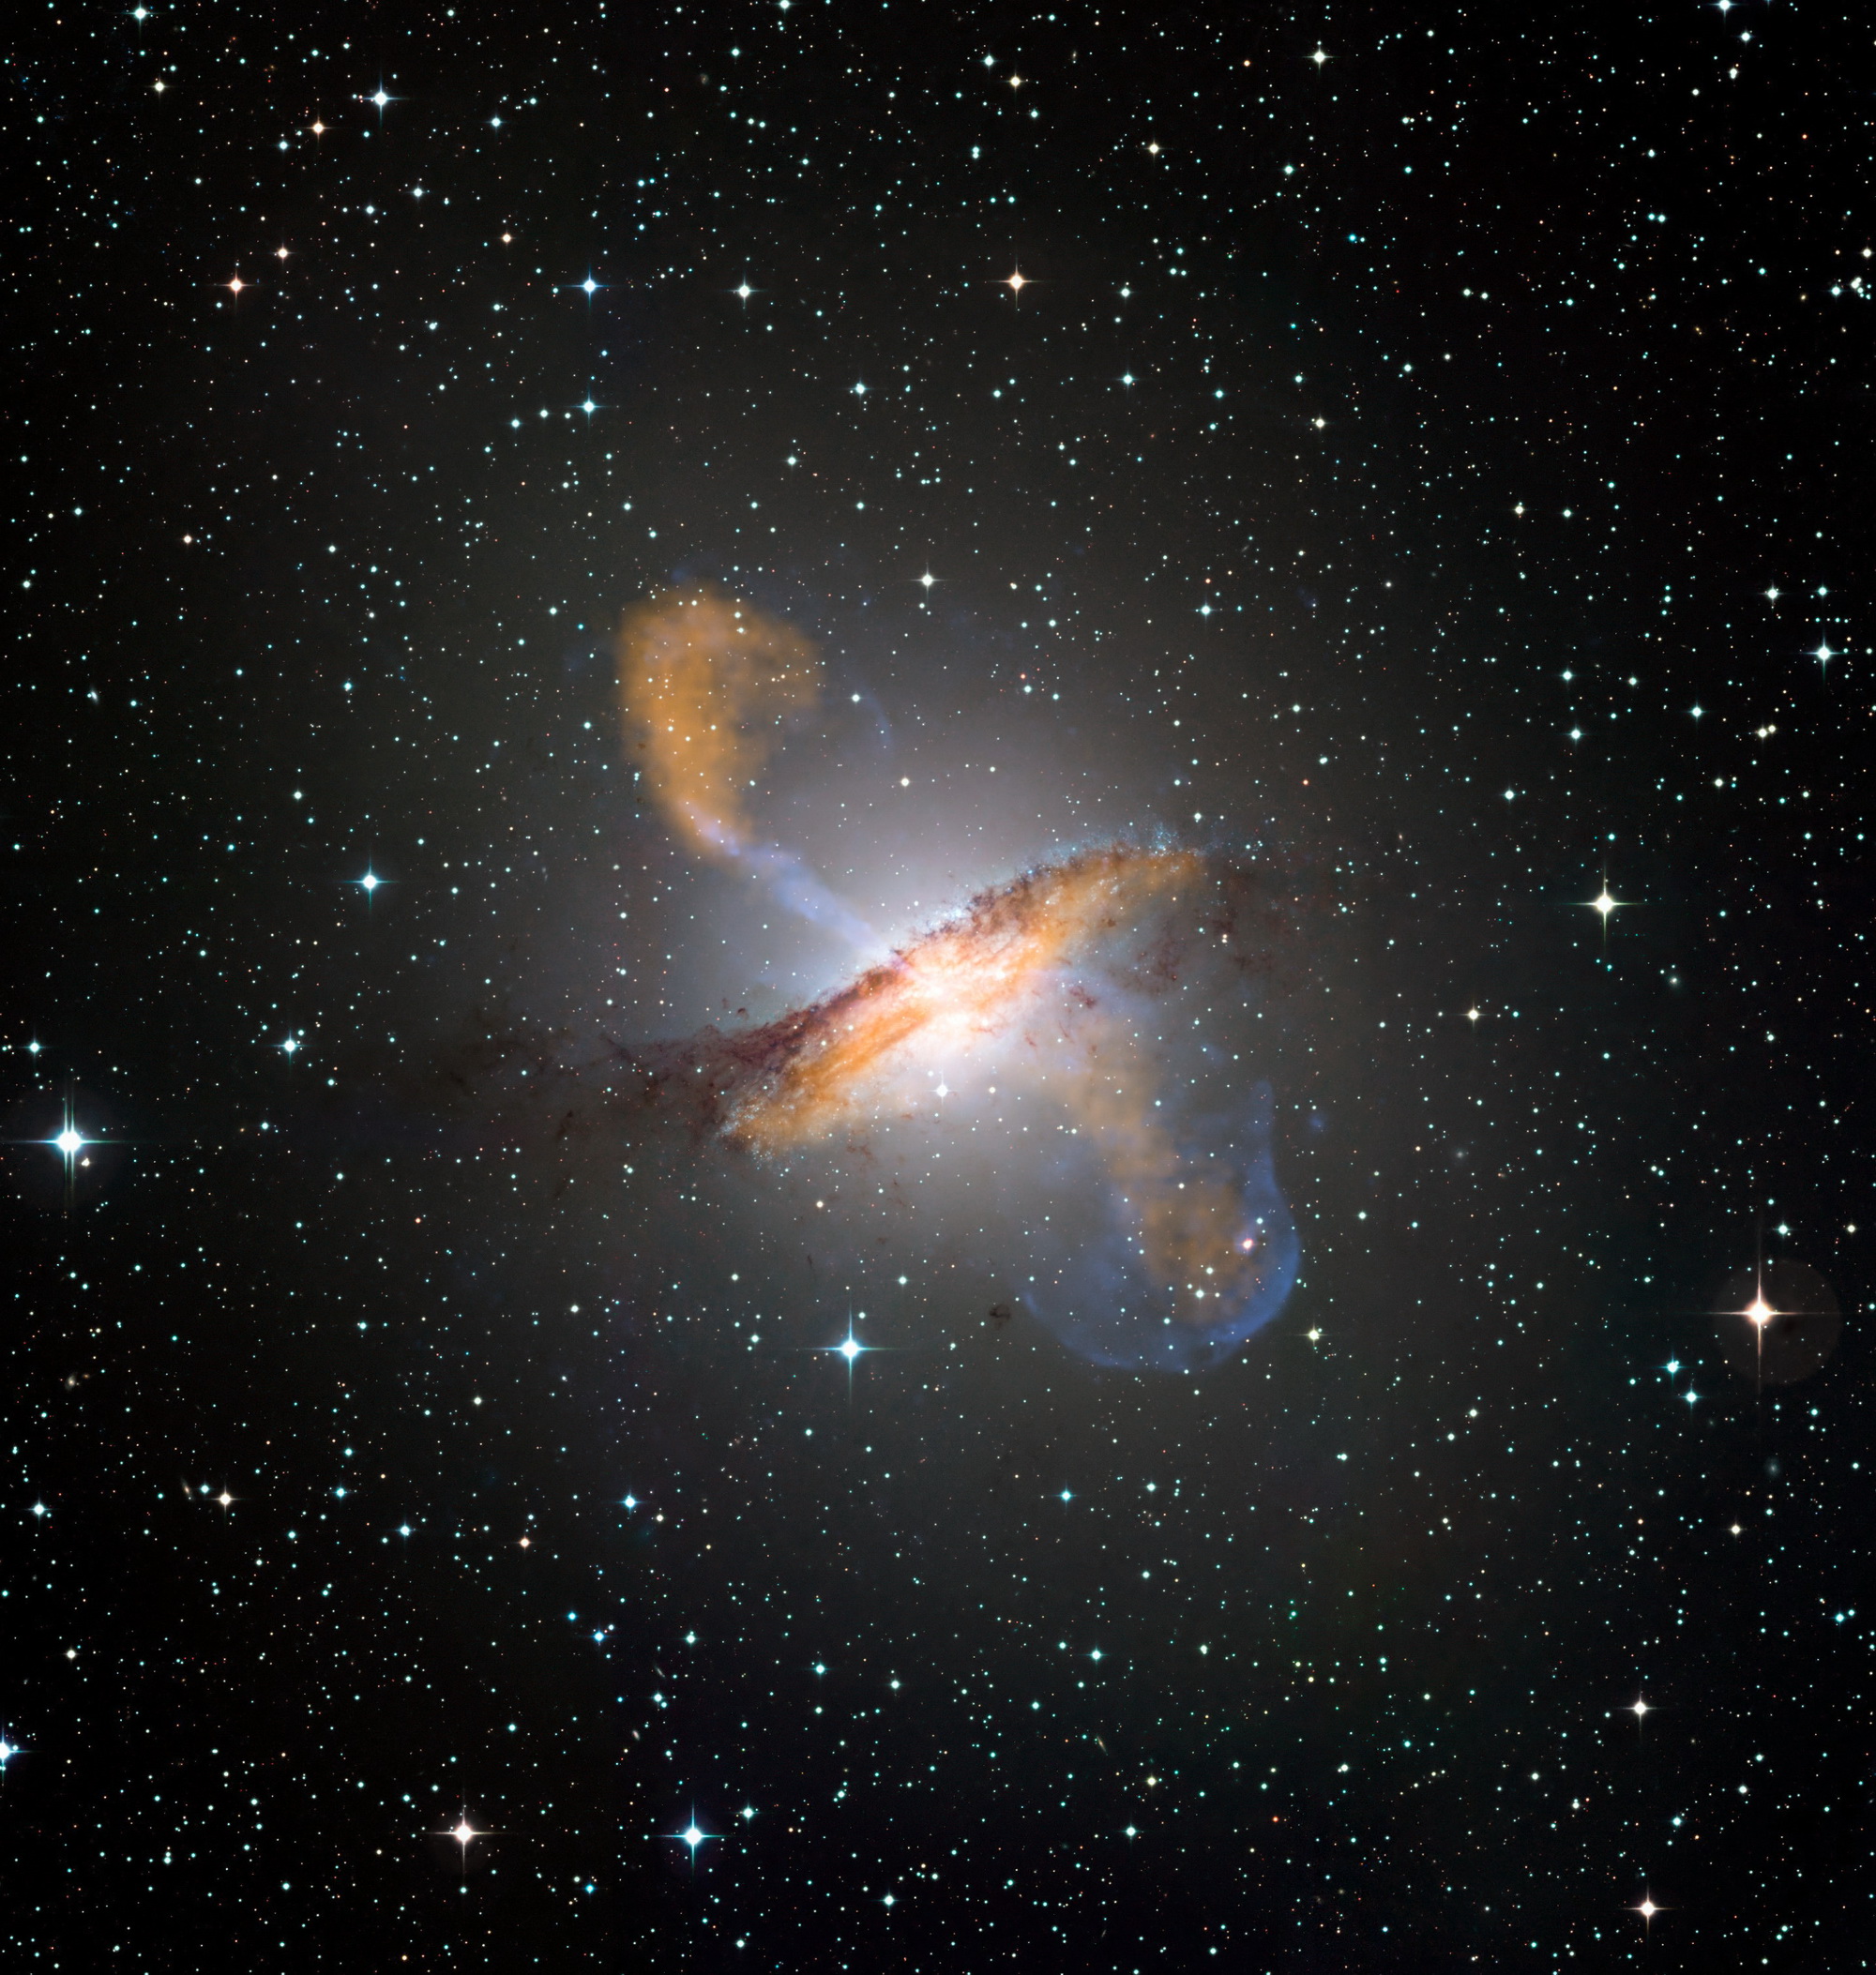 Eine Überlagerung von Aufnahmen in verschiedenen Wellenlängenbereichen zeigt die Galaxie Centaurus A, ihr Staubband und die Jets, die vom zentralen Schwarzen Loch ausgehen